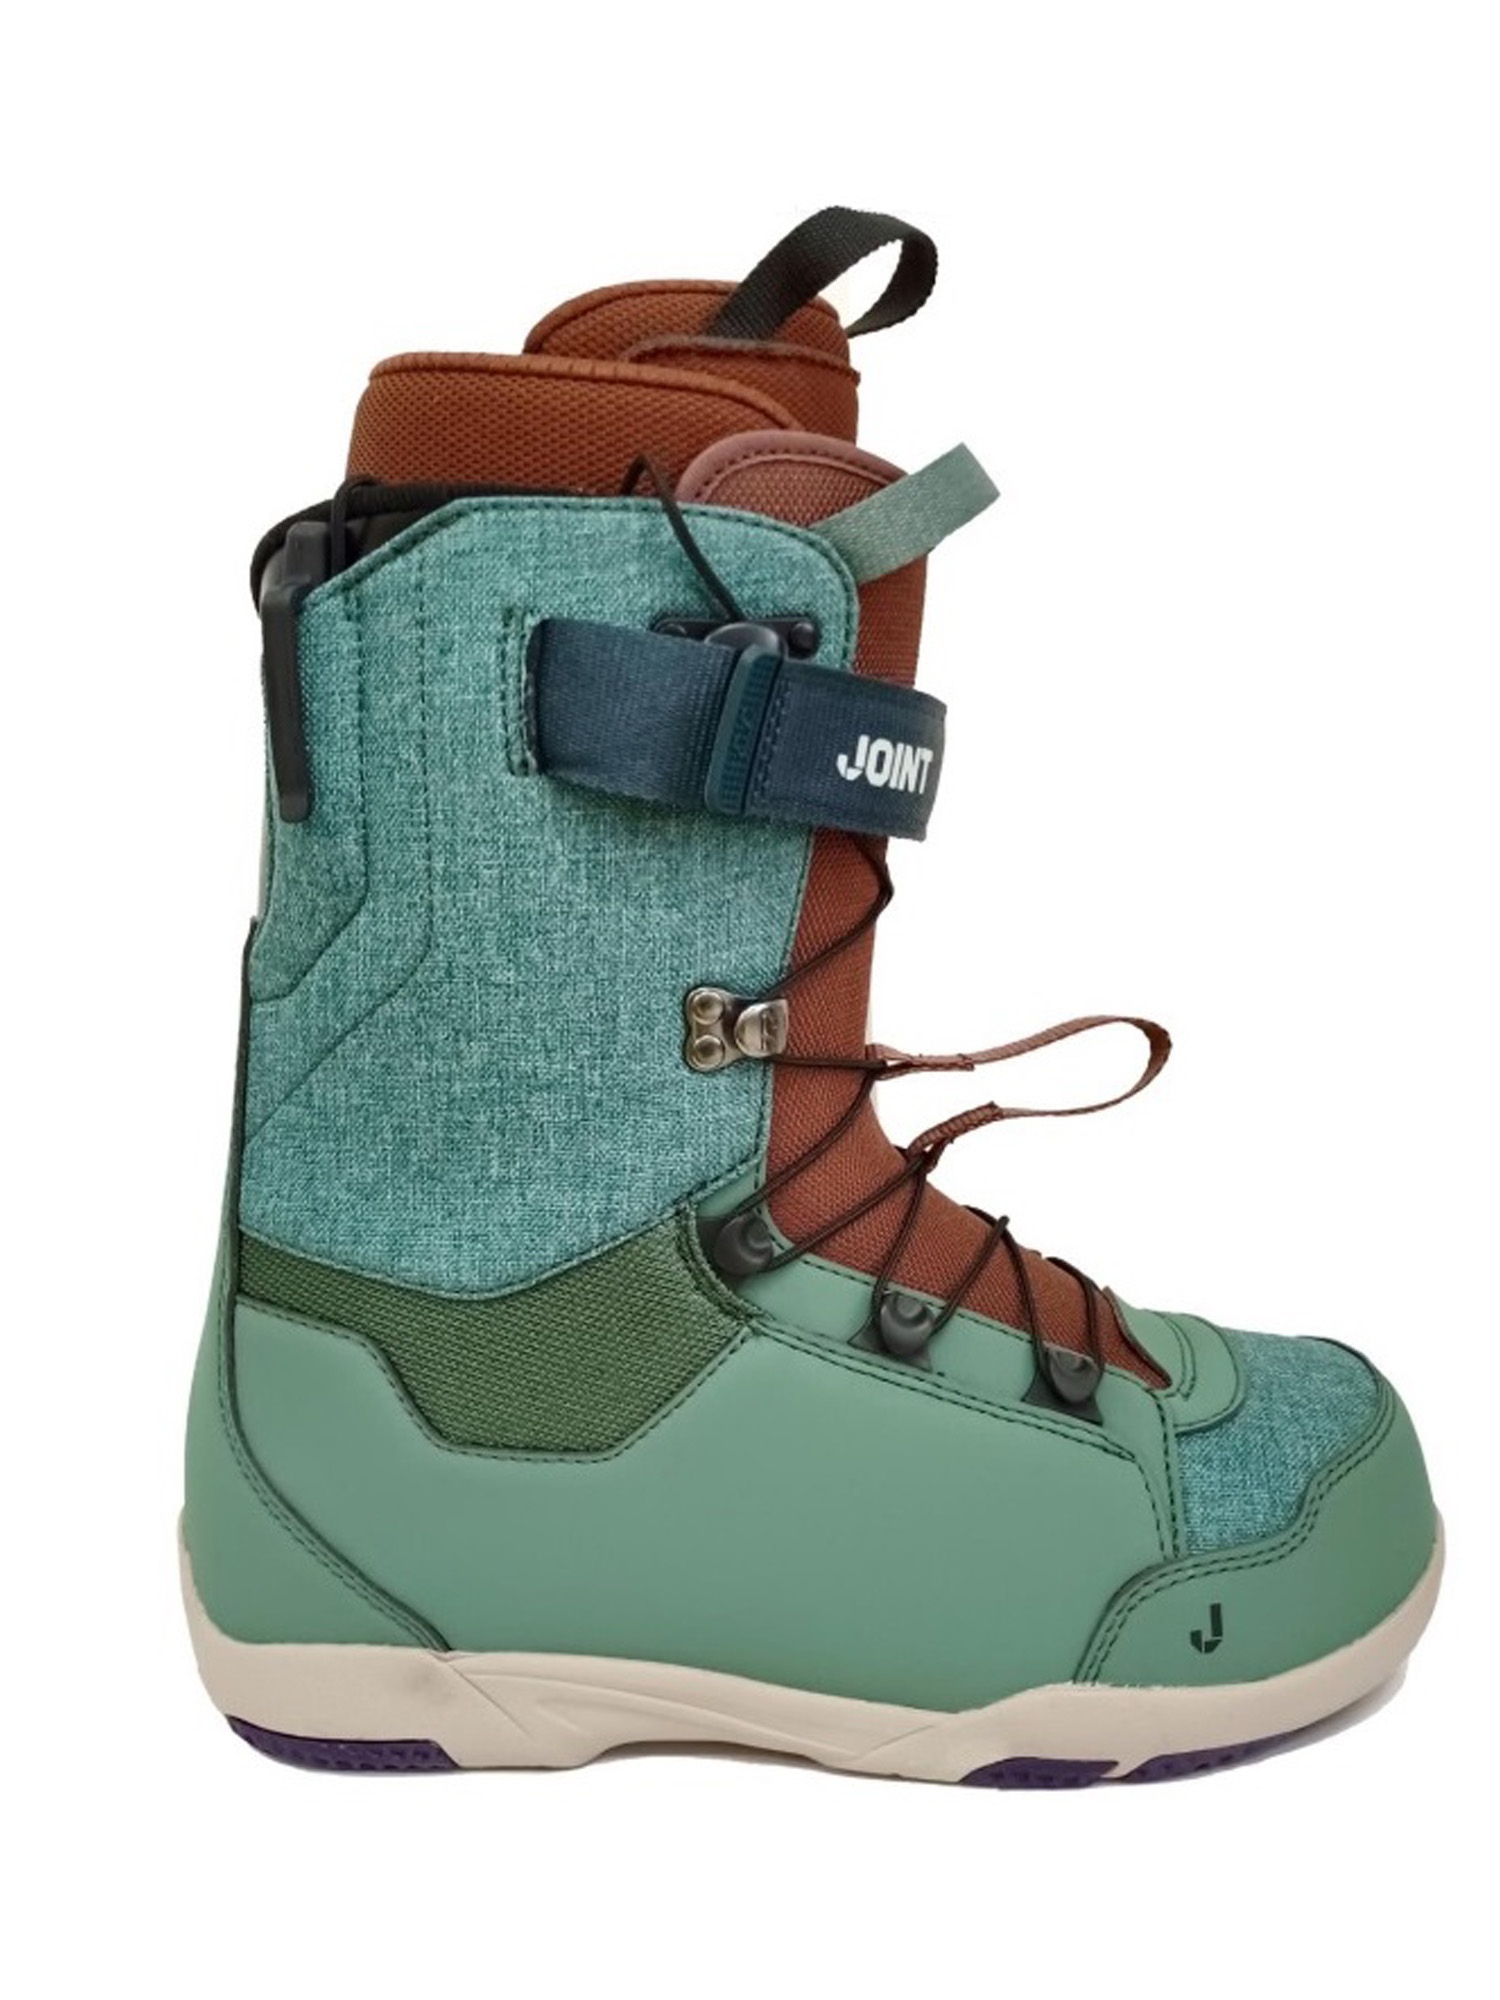 Ботинки для сноуборда Joint  At One's Ease 2023 dark green/brown 24,5 см